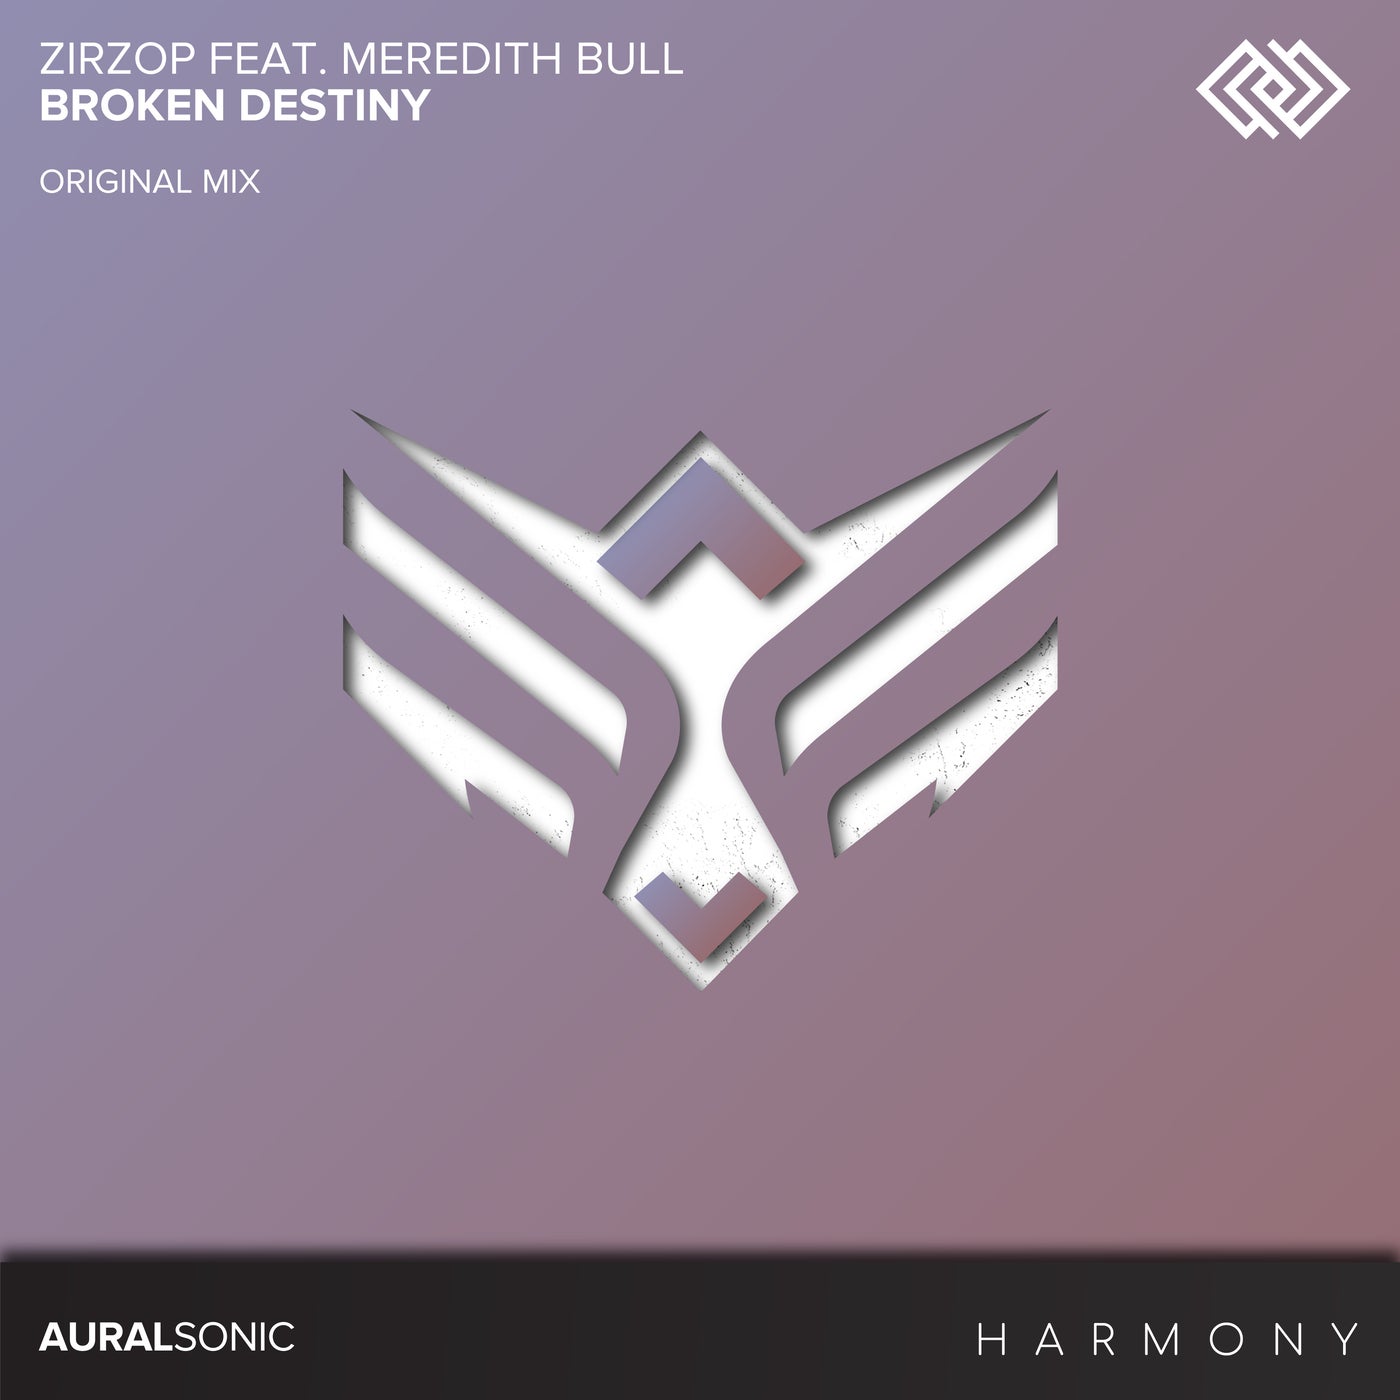 ZirZop Feat. Meredith Bull - Broken Destiny (Original Mix)